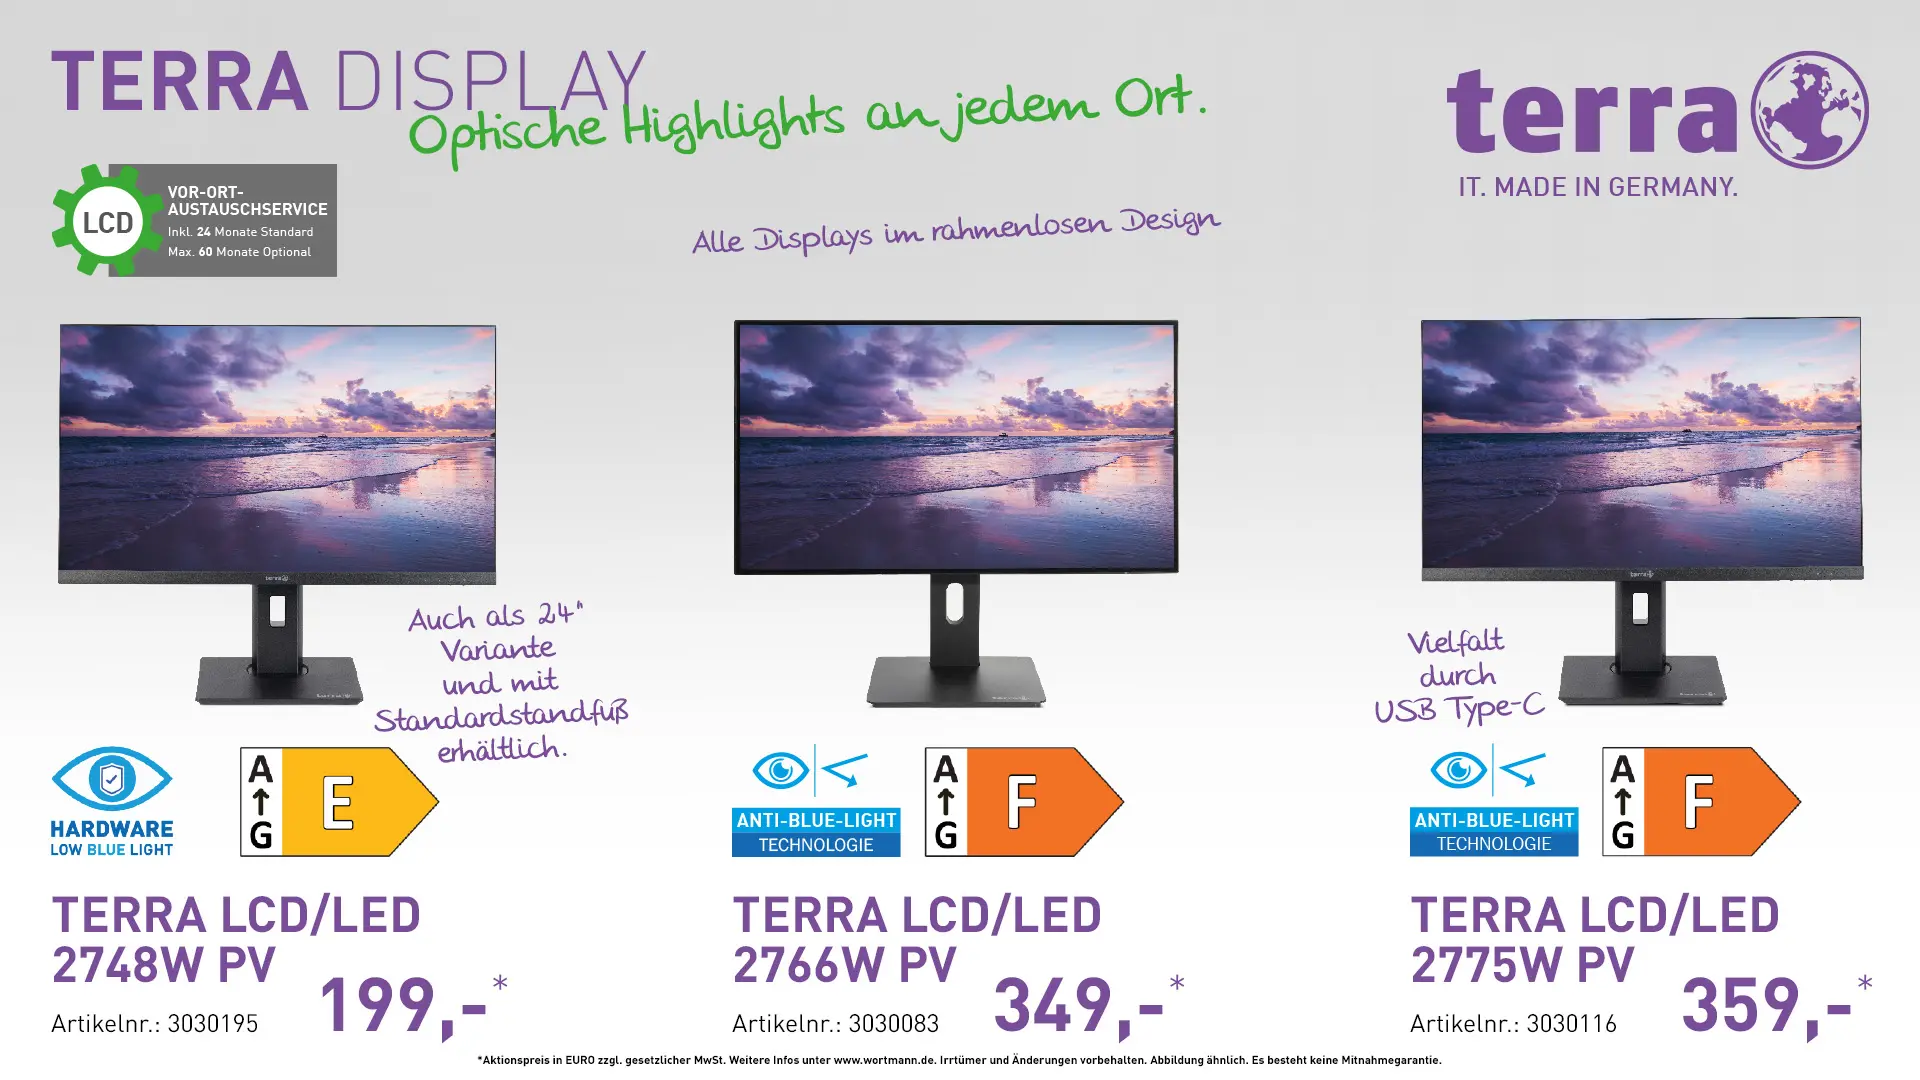 Terra LCD/LED 2748W PV, Terra LCD/LED 2766W PV, Terra LCD/LED 2775W PV